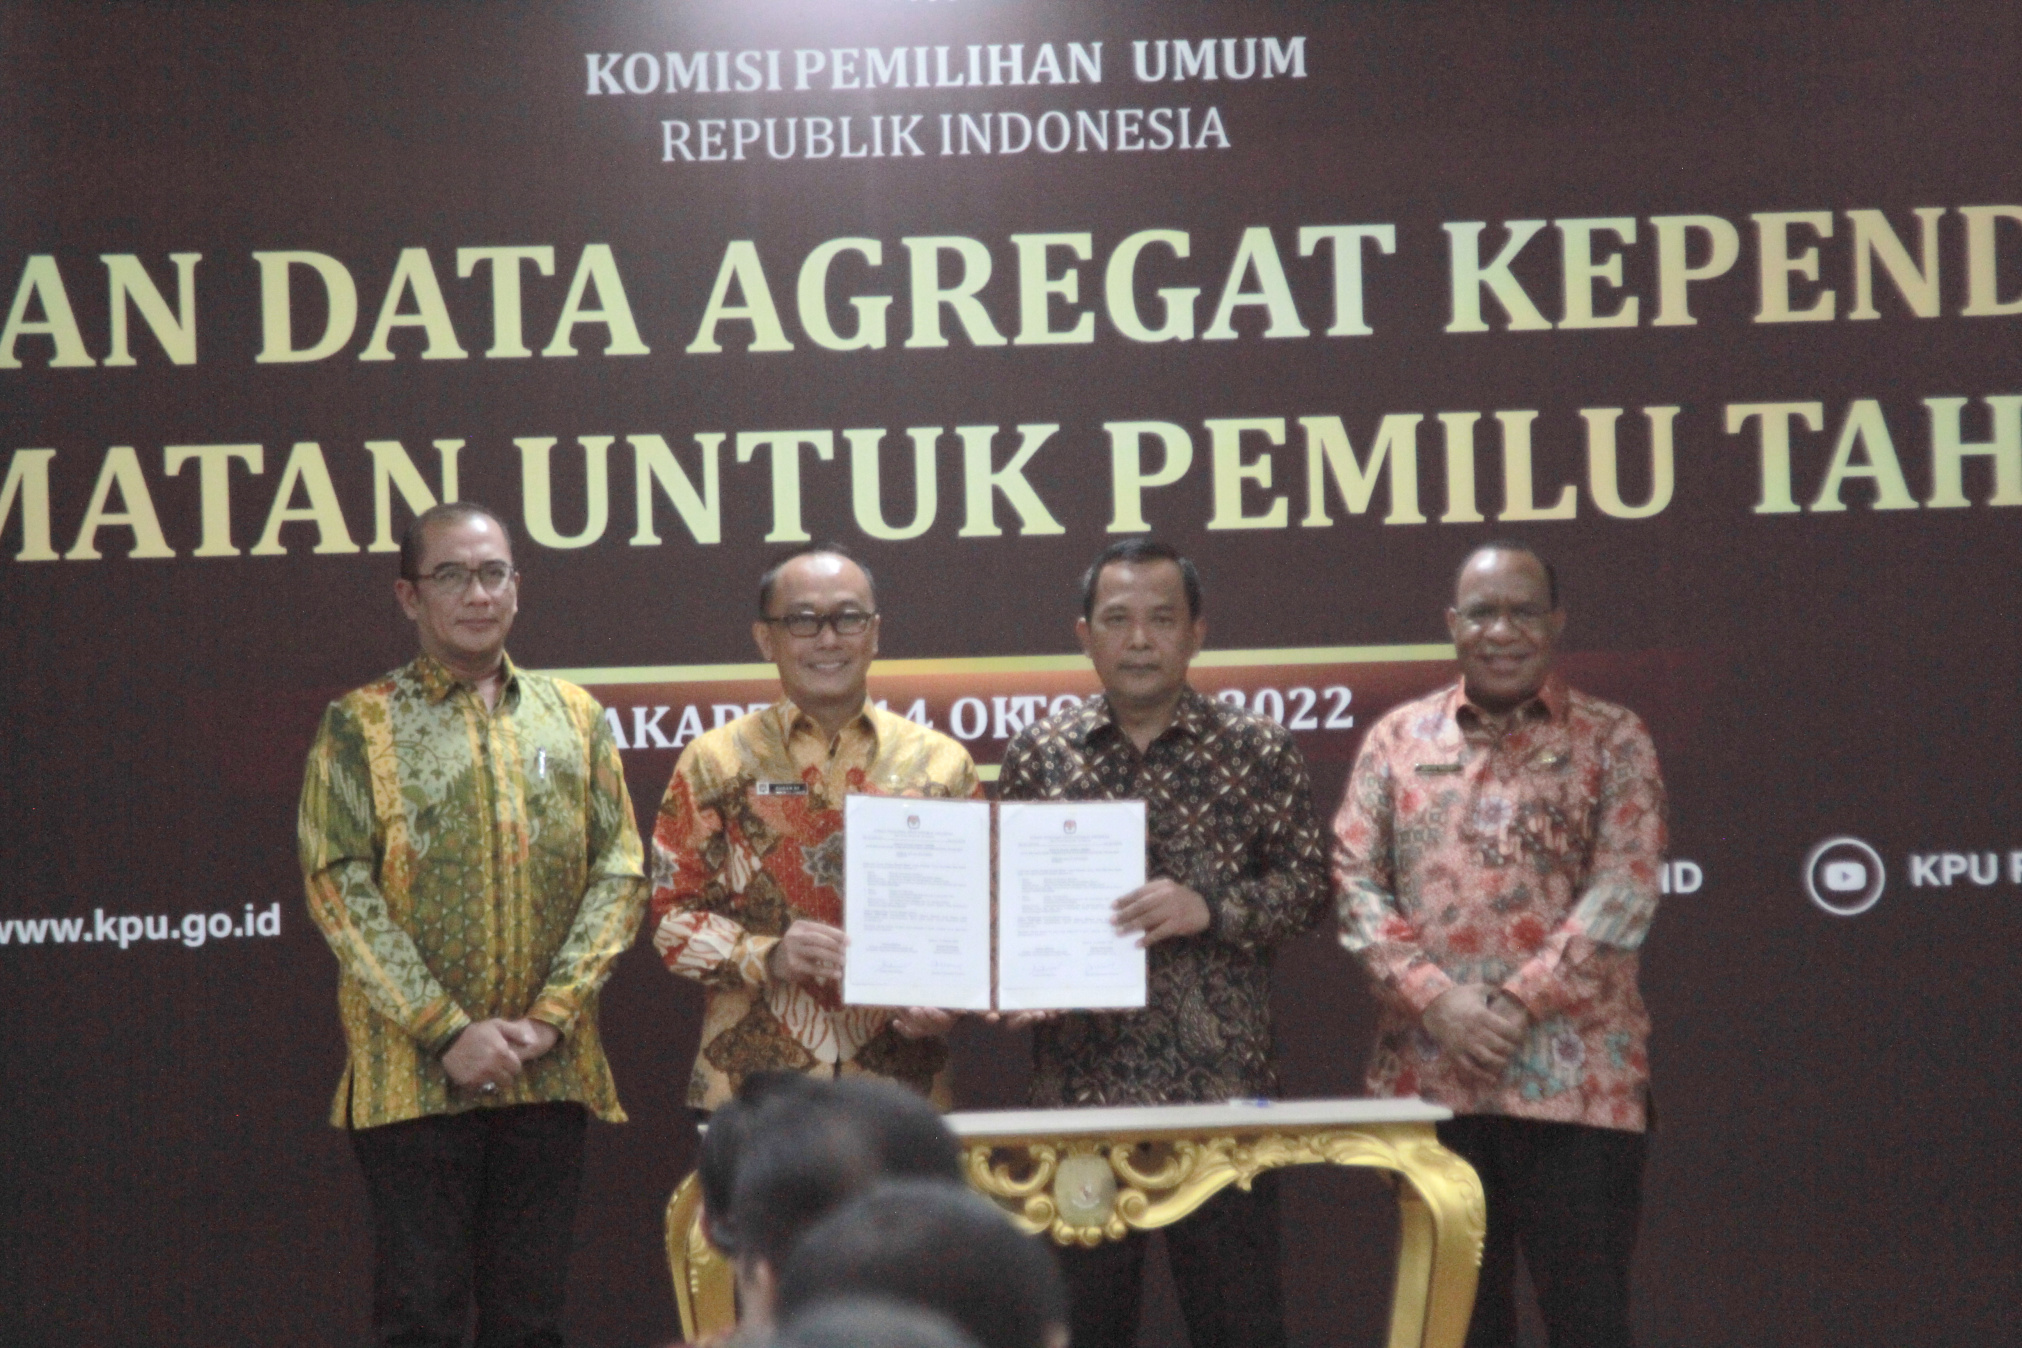 KPU penyerahan data agregat Kependudukan per kecamatan (DAK2) (Ashar/Sinpo.id)